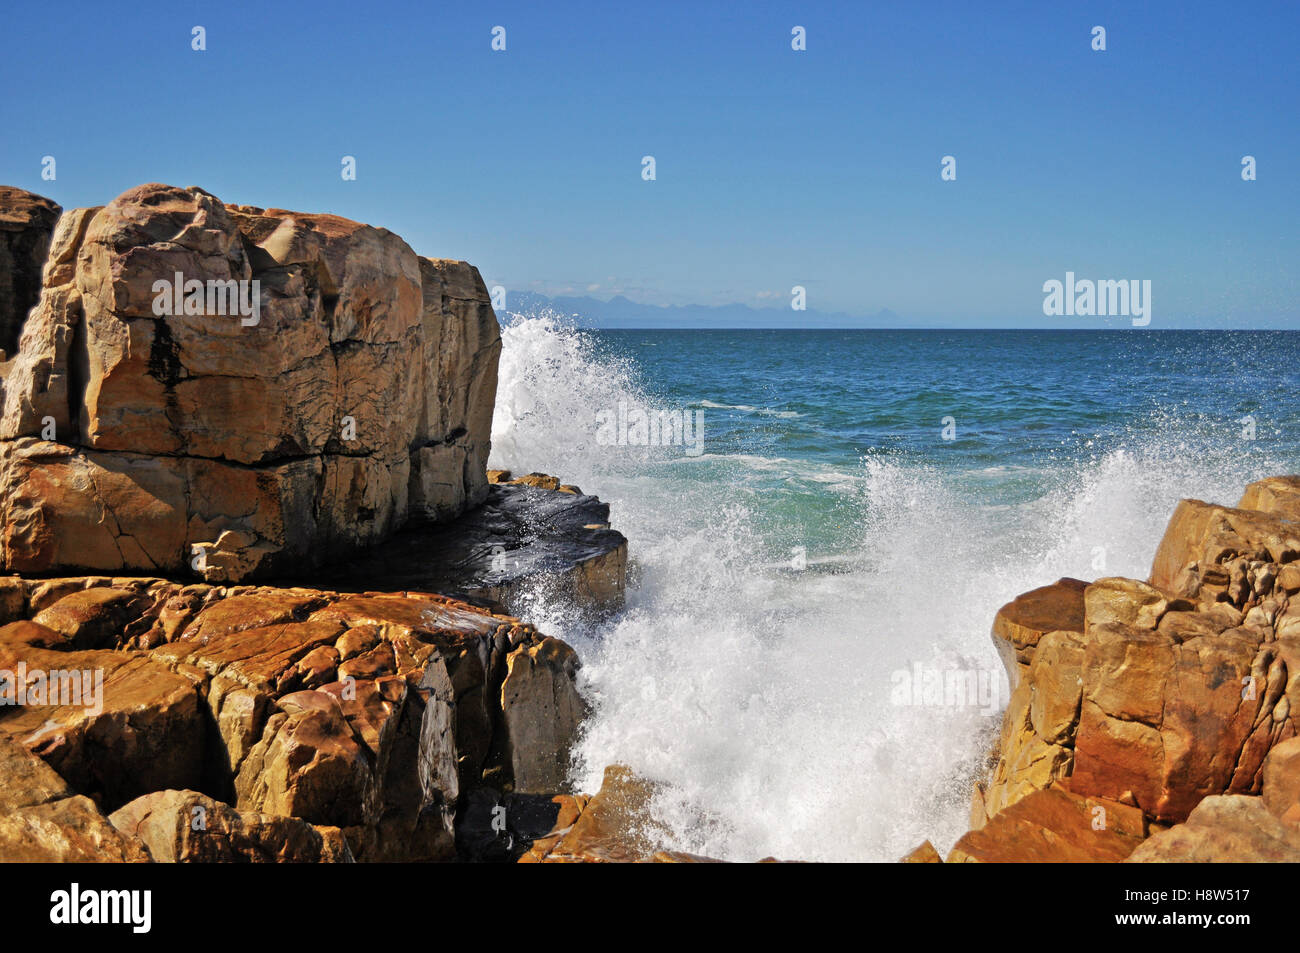 Südafrika: Brechen von Wellen auf dem roten Felsen am Strand von Plettenberg Bay, einer Stadt an der berühmten Garden Route. Stockfoto